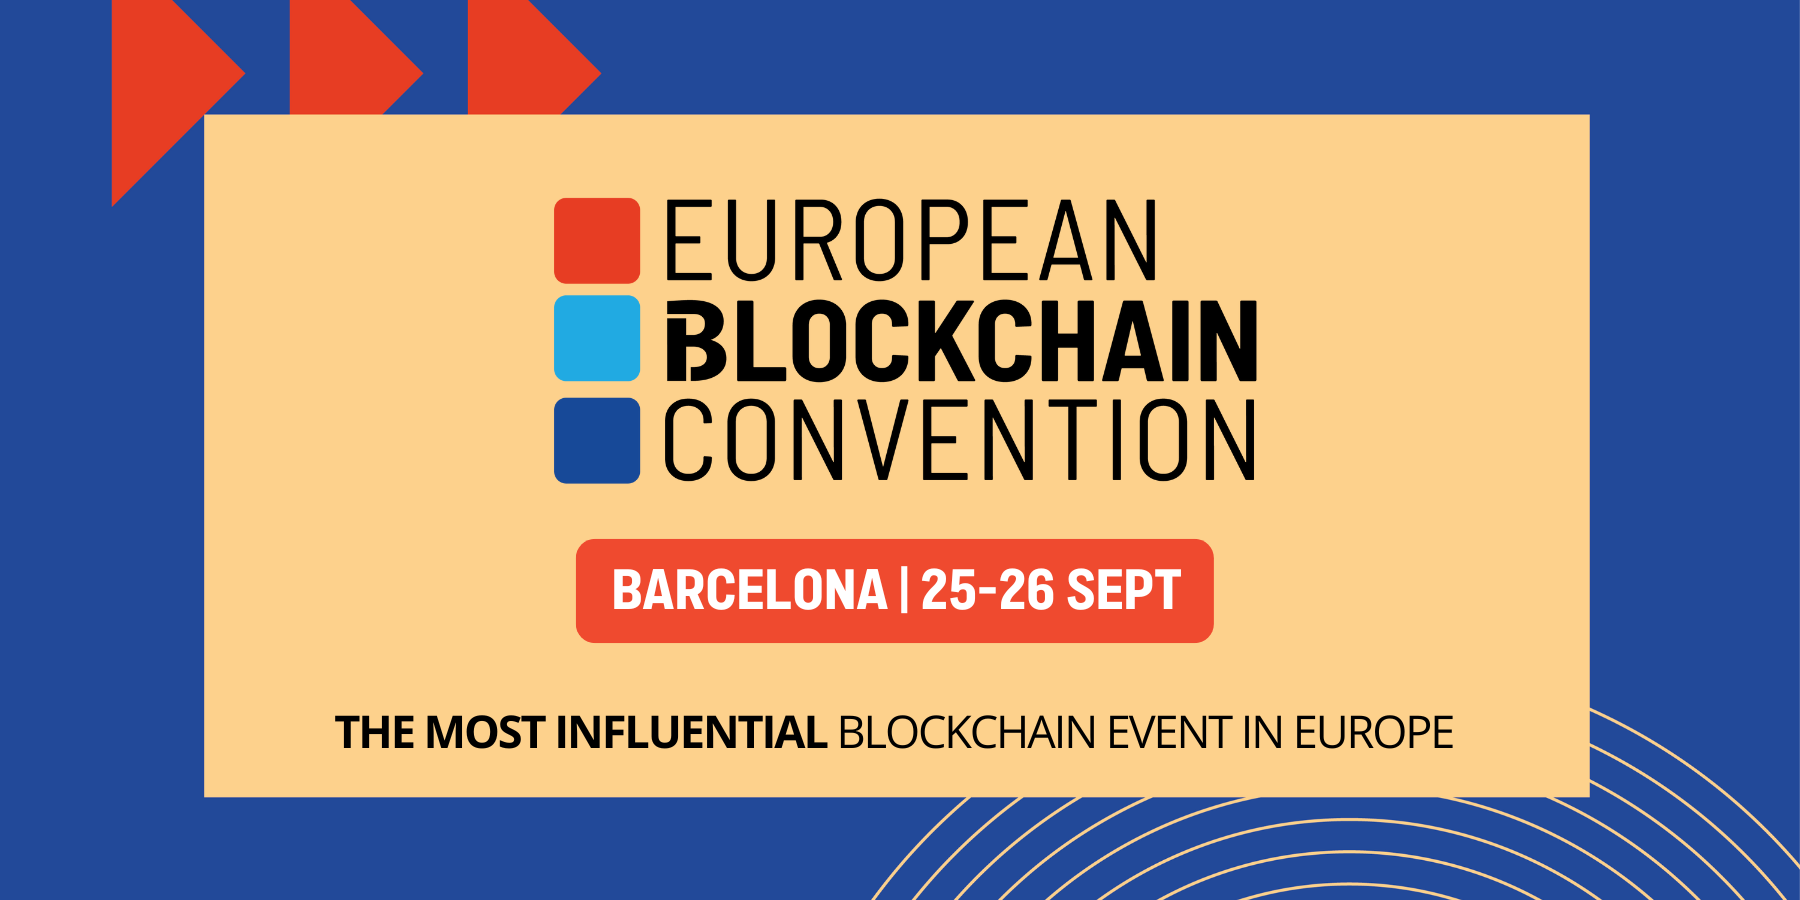 Agenda | Finyear est partenaire de la 10ème European Blockchain Convention